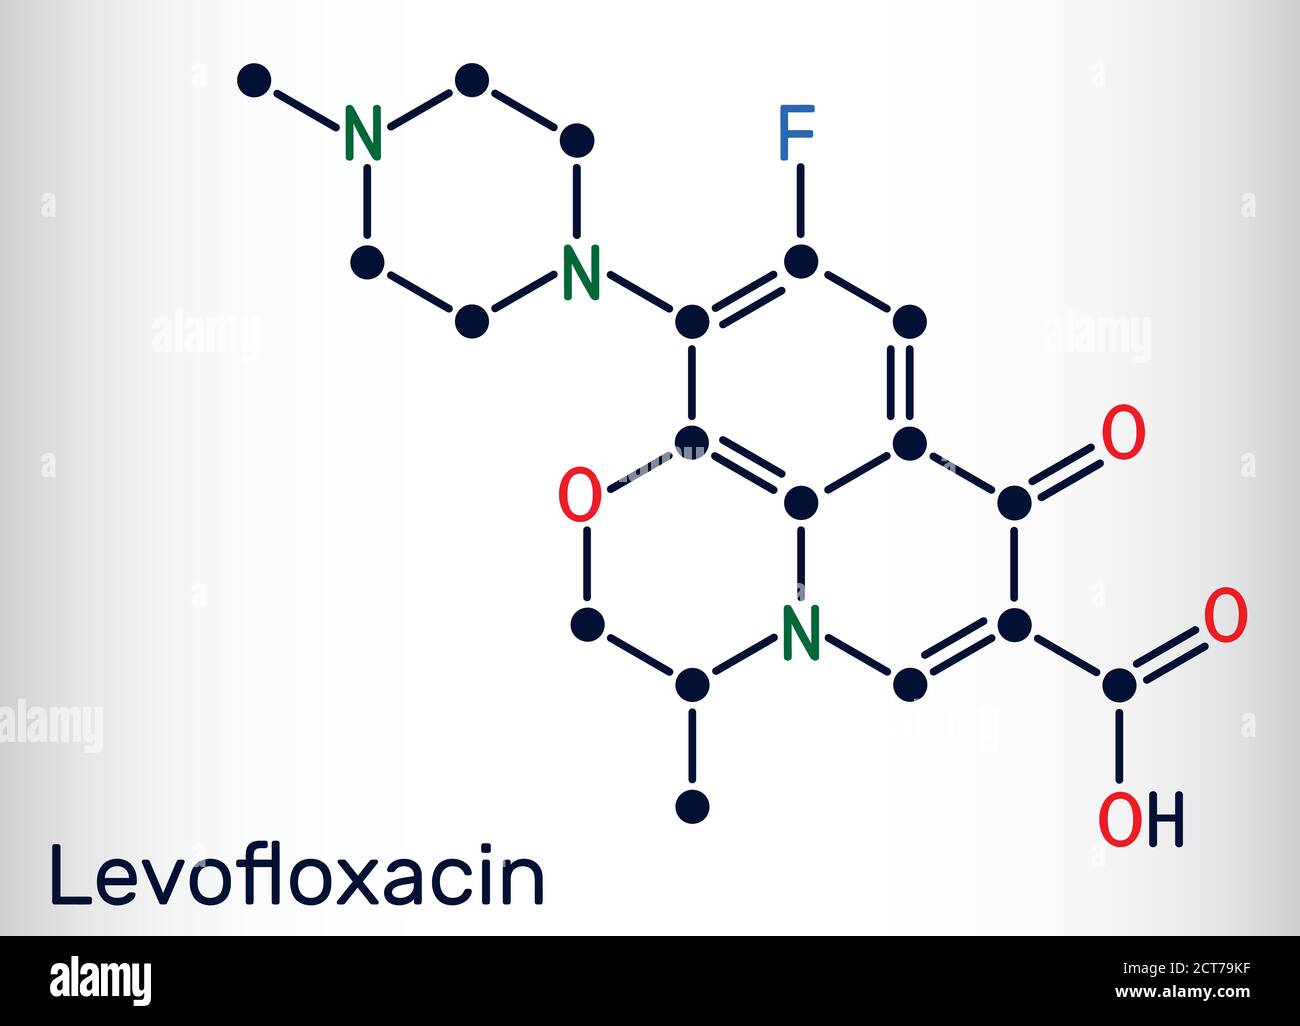 Levofloxacin, Fluorchinolon Antibiotikum Molekül. Es wird verwendet, um bakterielle Sinusitis, Lungenentzündung zu behandeln. Chemische Formel des Skeletts. Vektorgrafik Stock Vektor